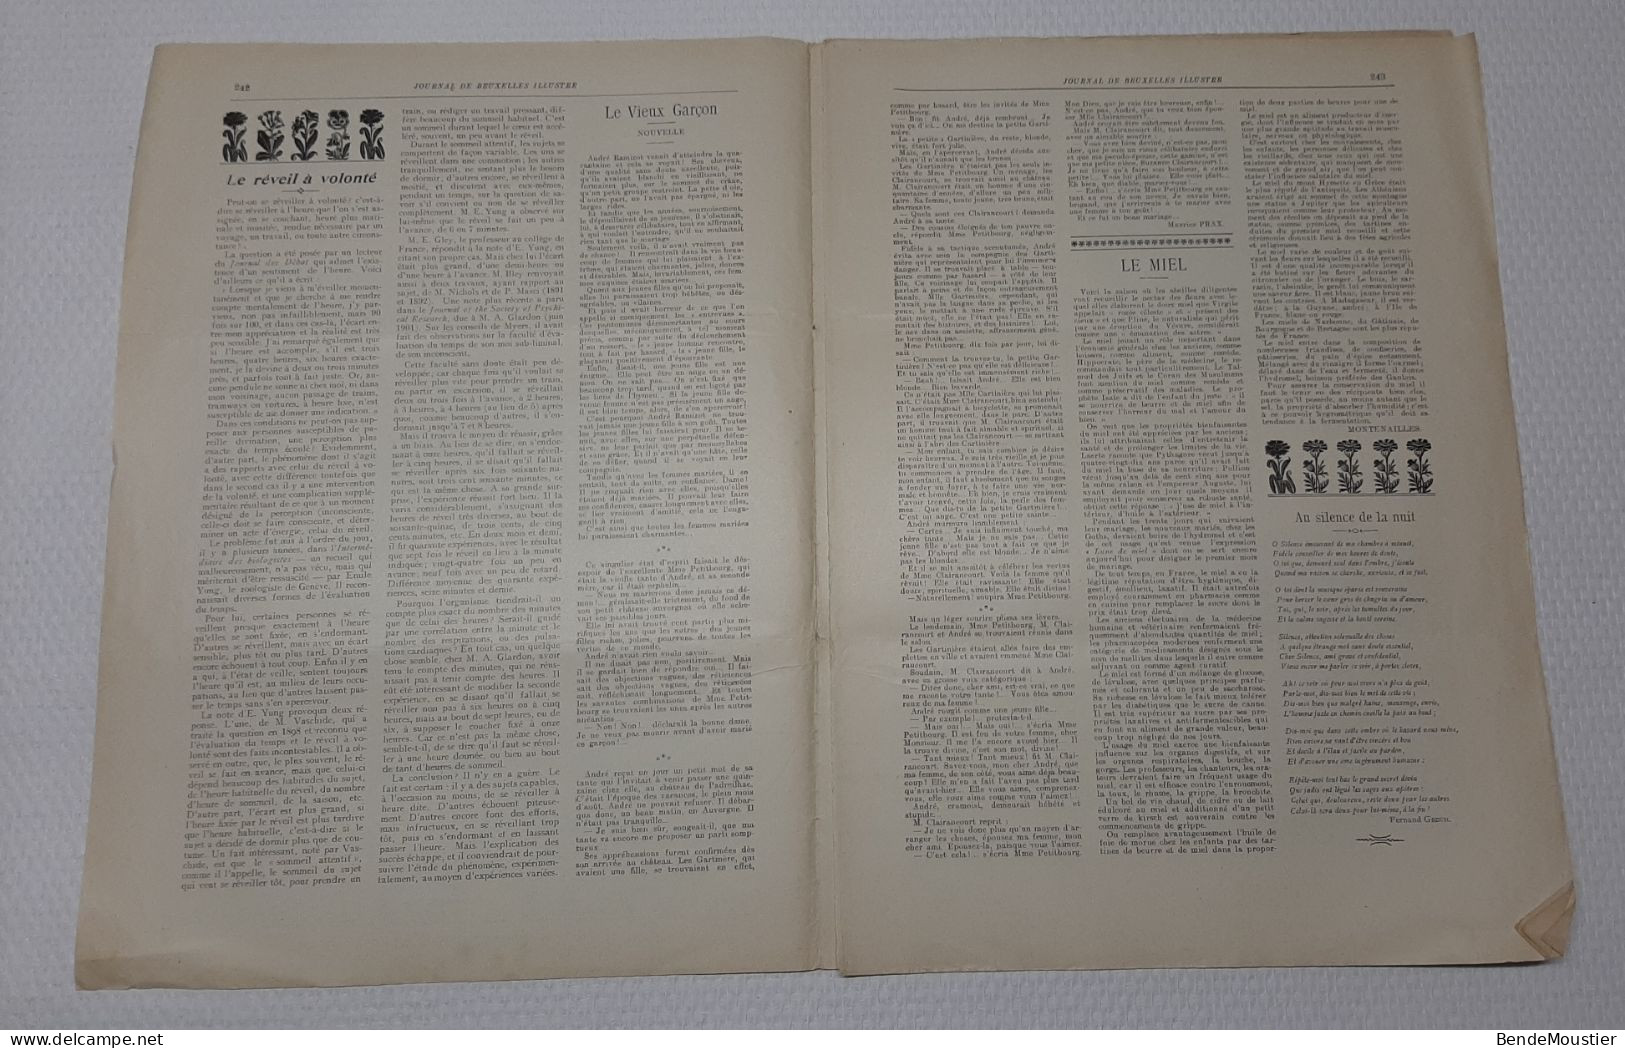 Journal De Bruxelles Illustré - Souverains Danois à Bruxelles - Concours Hippique - Union Coloniale - 1914. - Allgemeine Literatur